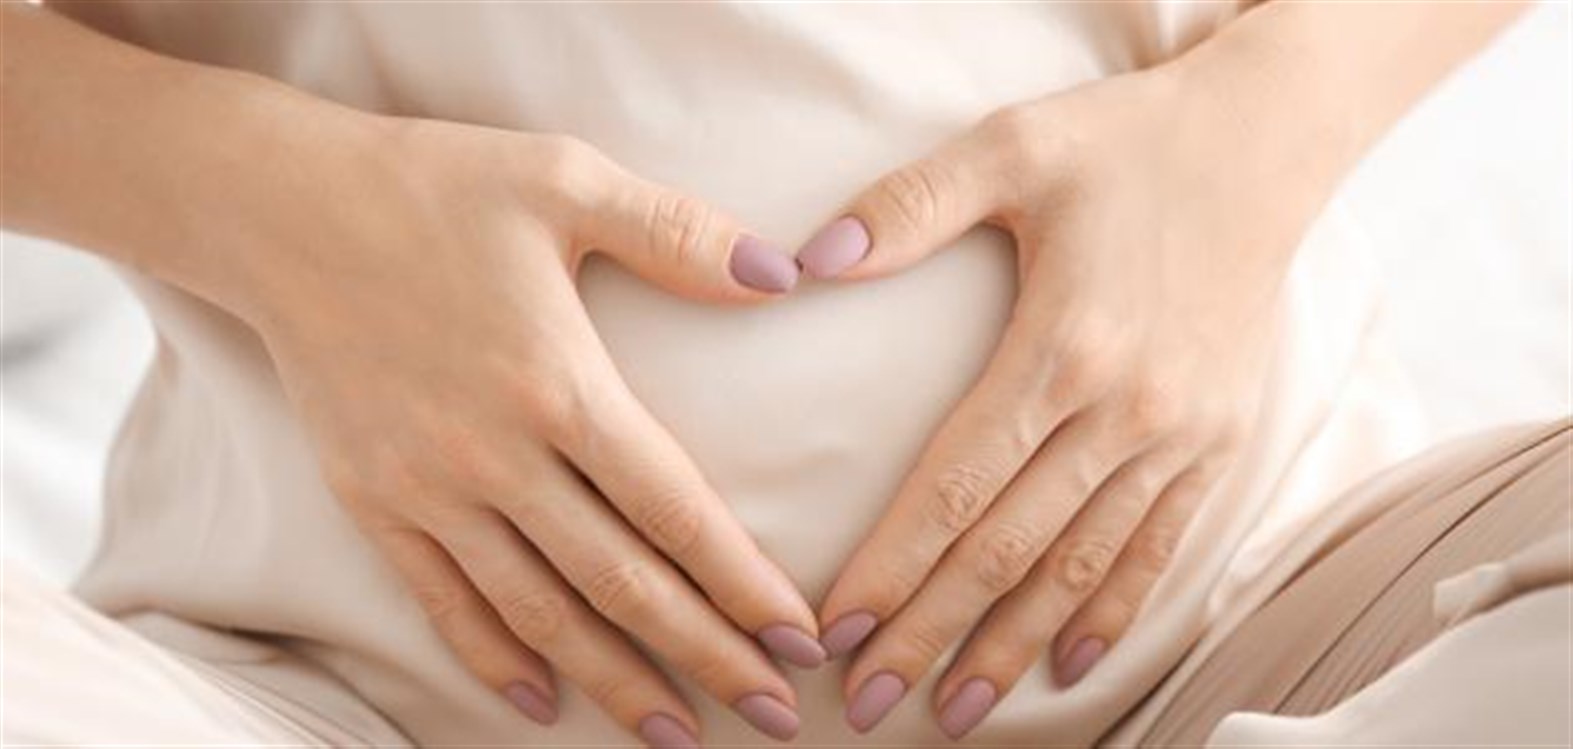 شكل وحجم الجنين في الشهر الاول من الحمل